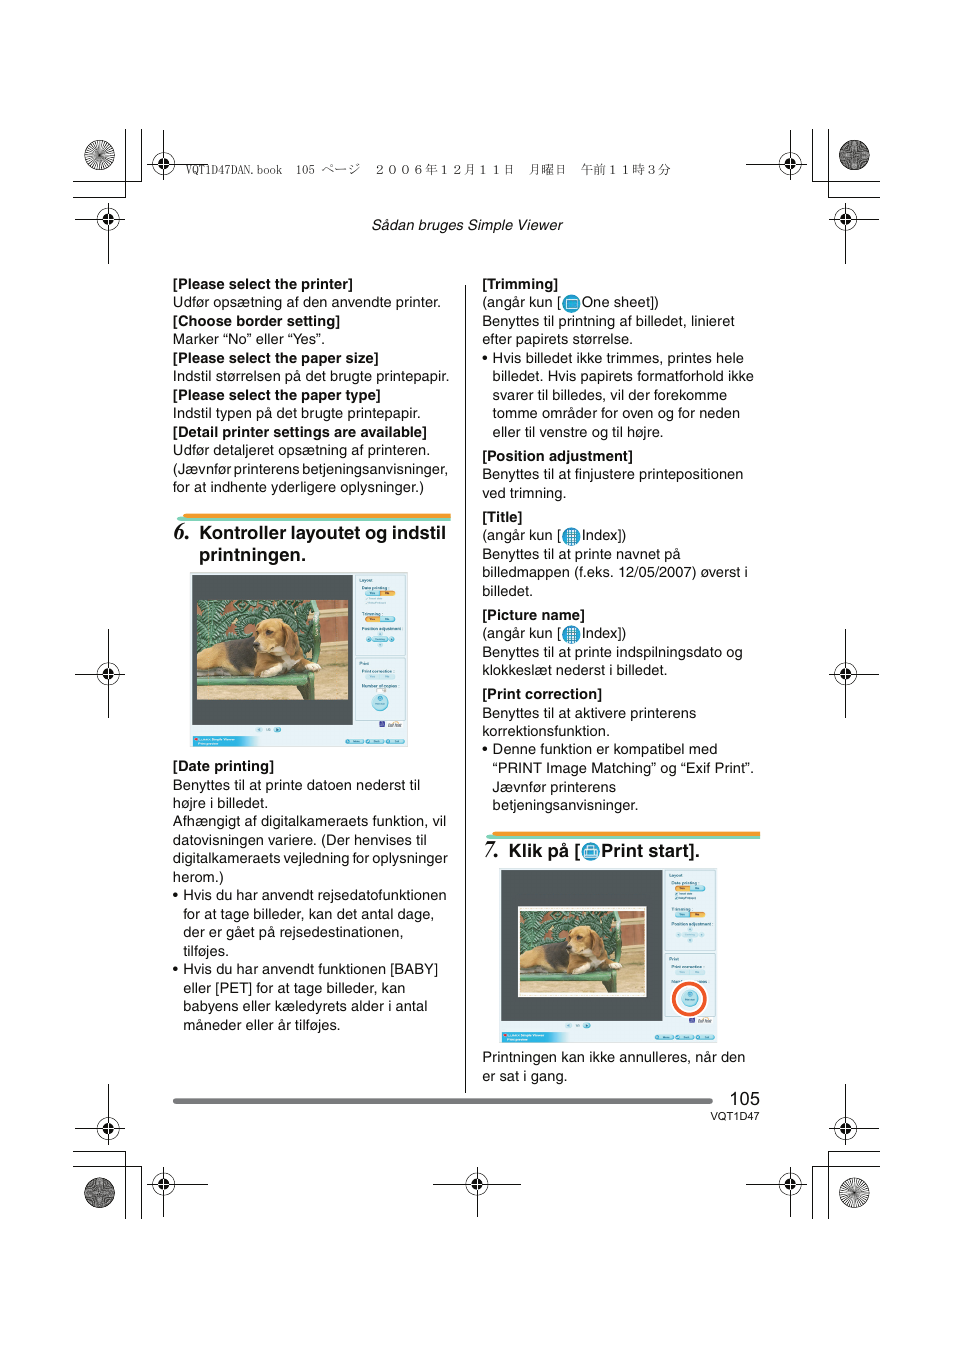 Kontroller layoutet og indstil printningen, Klik på [ print start |  Panasonic DMCFX30 User Manual | Page 105 / 120 | Original mode